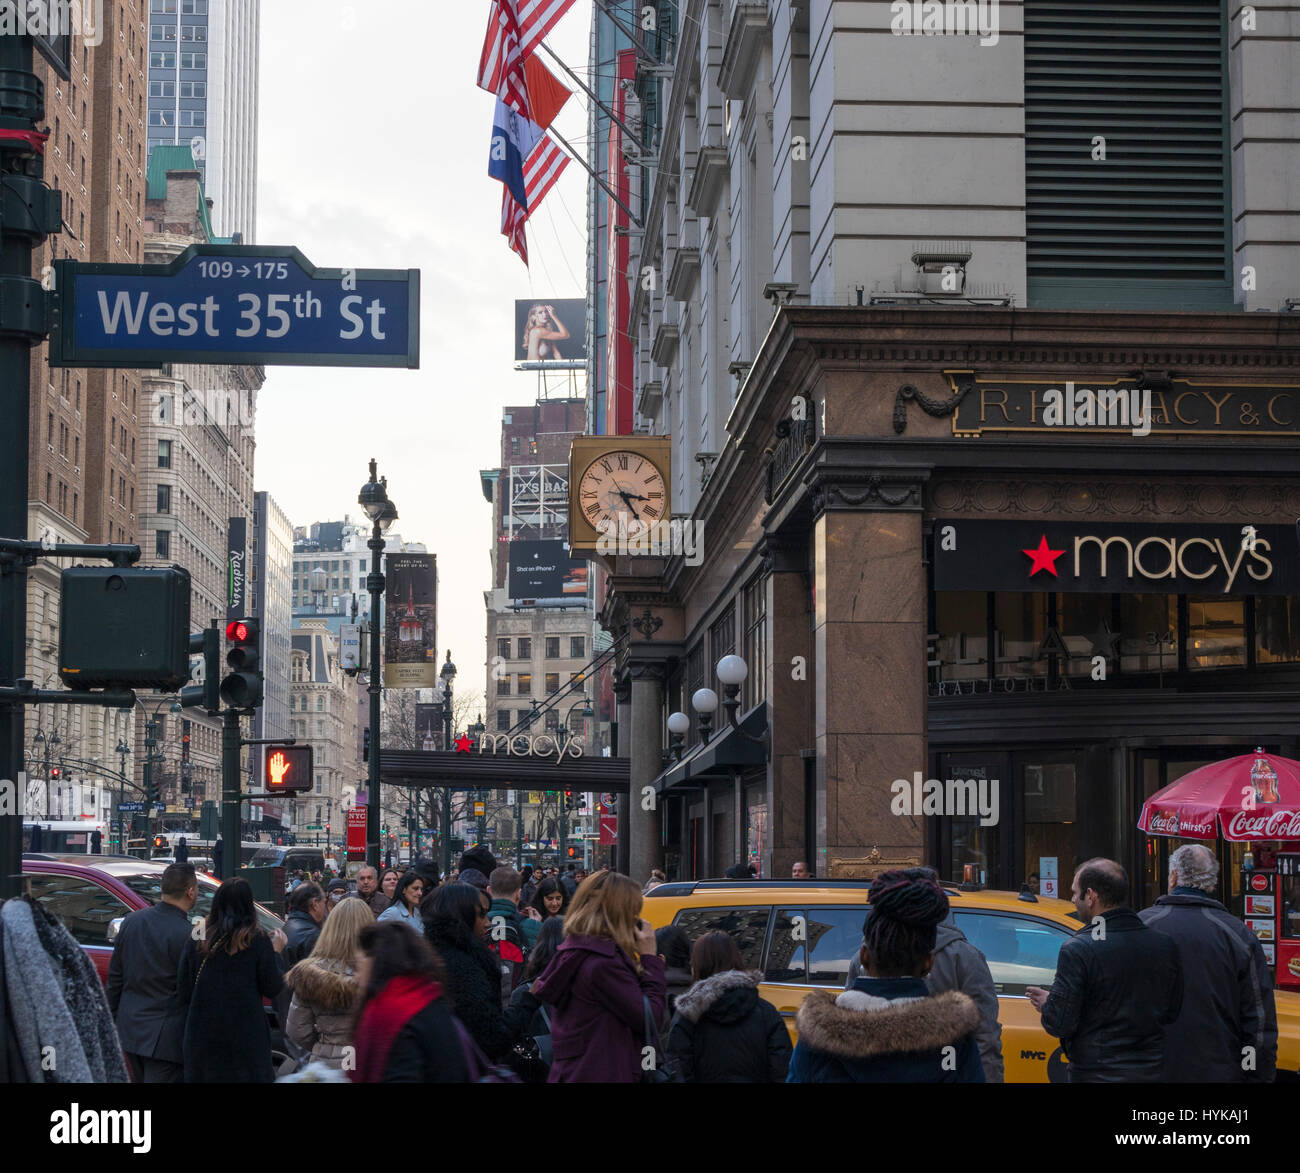 Macys NYC – Stock Editorial Photo © littleny #57844301